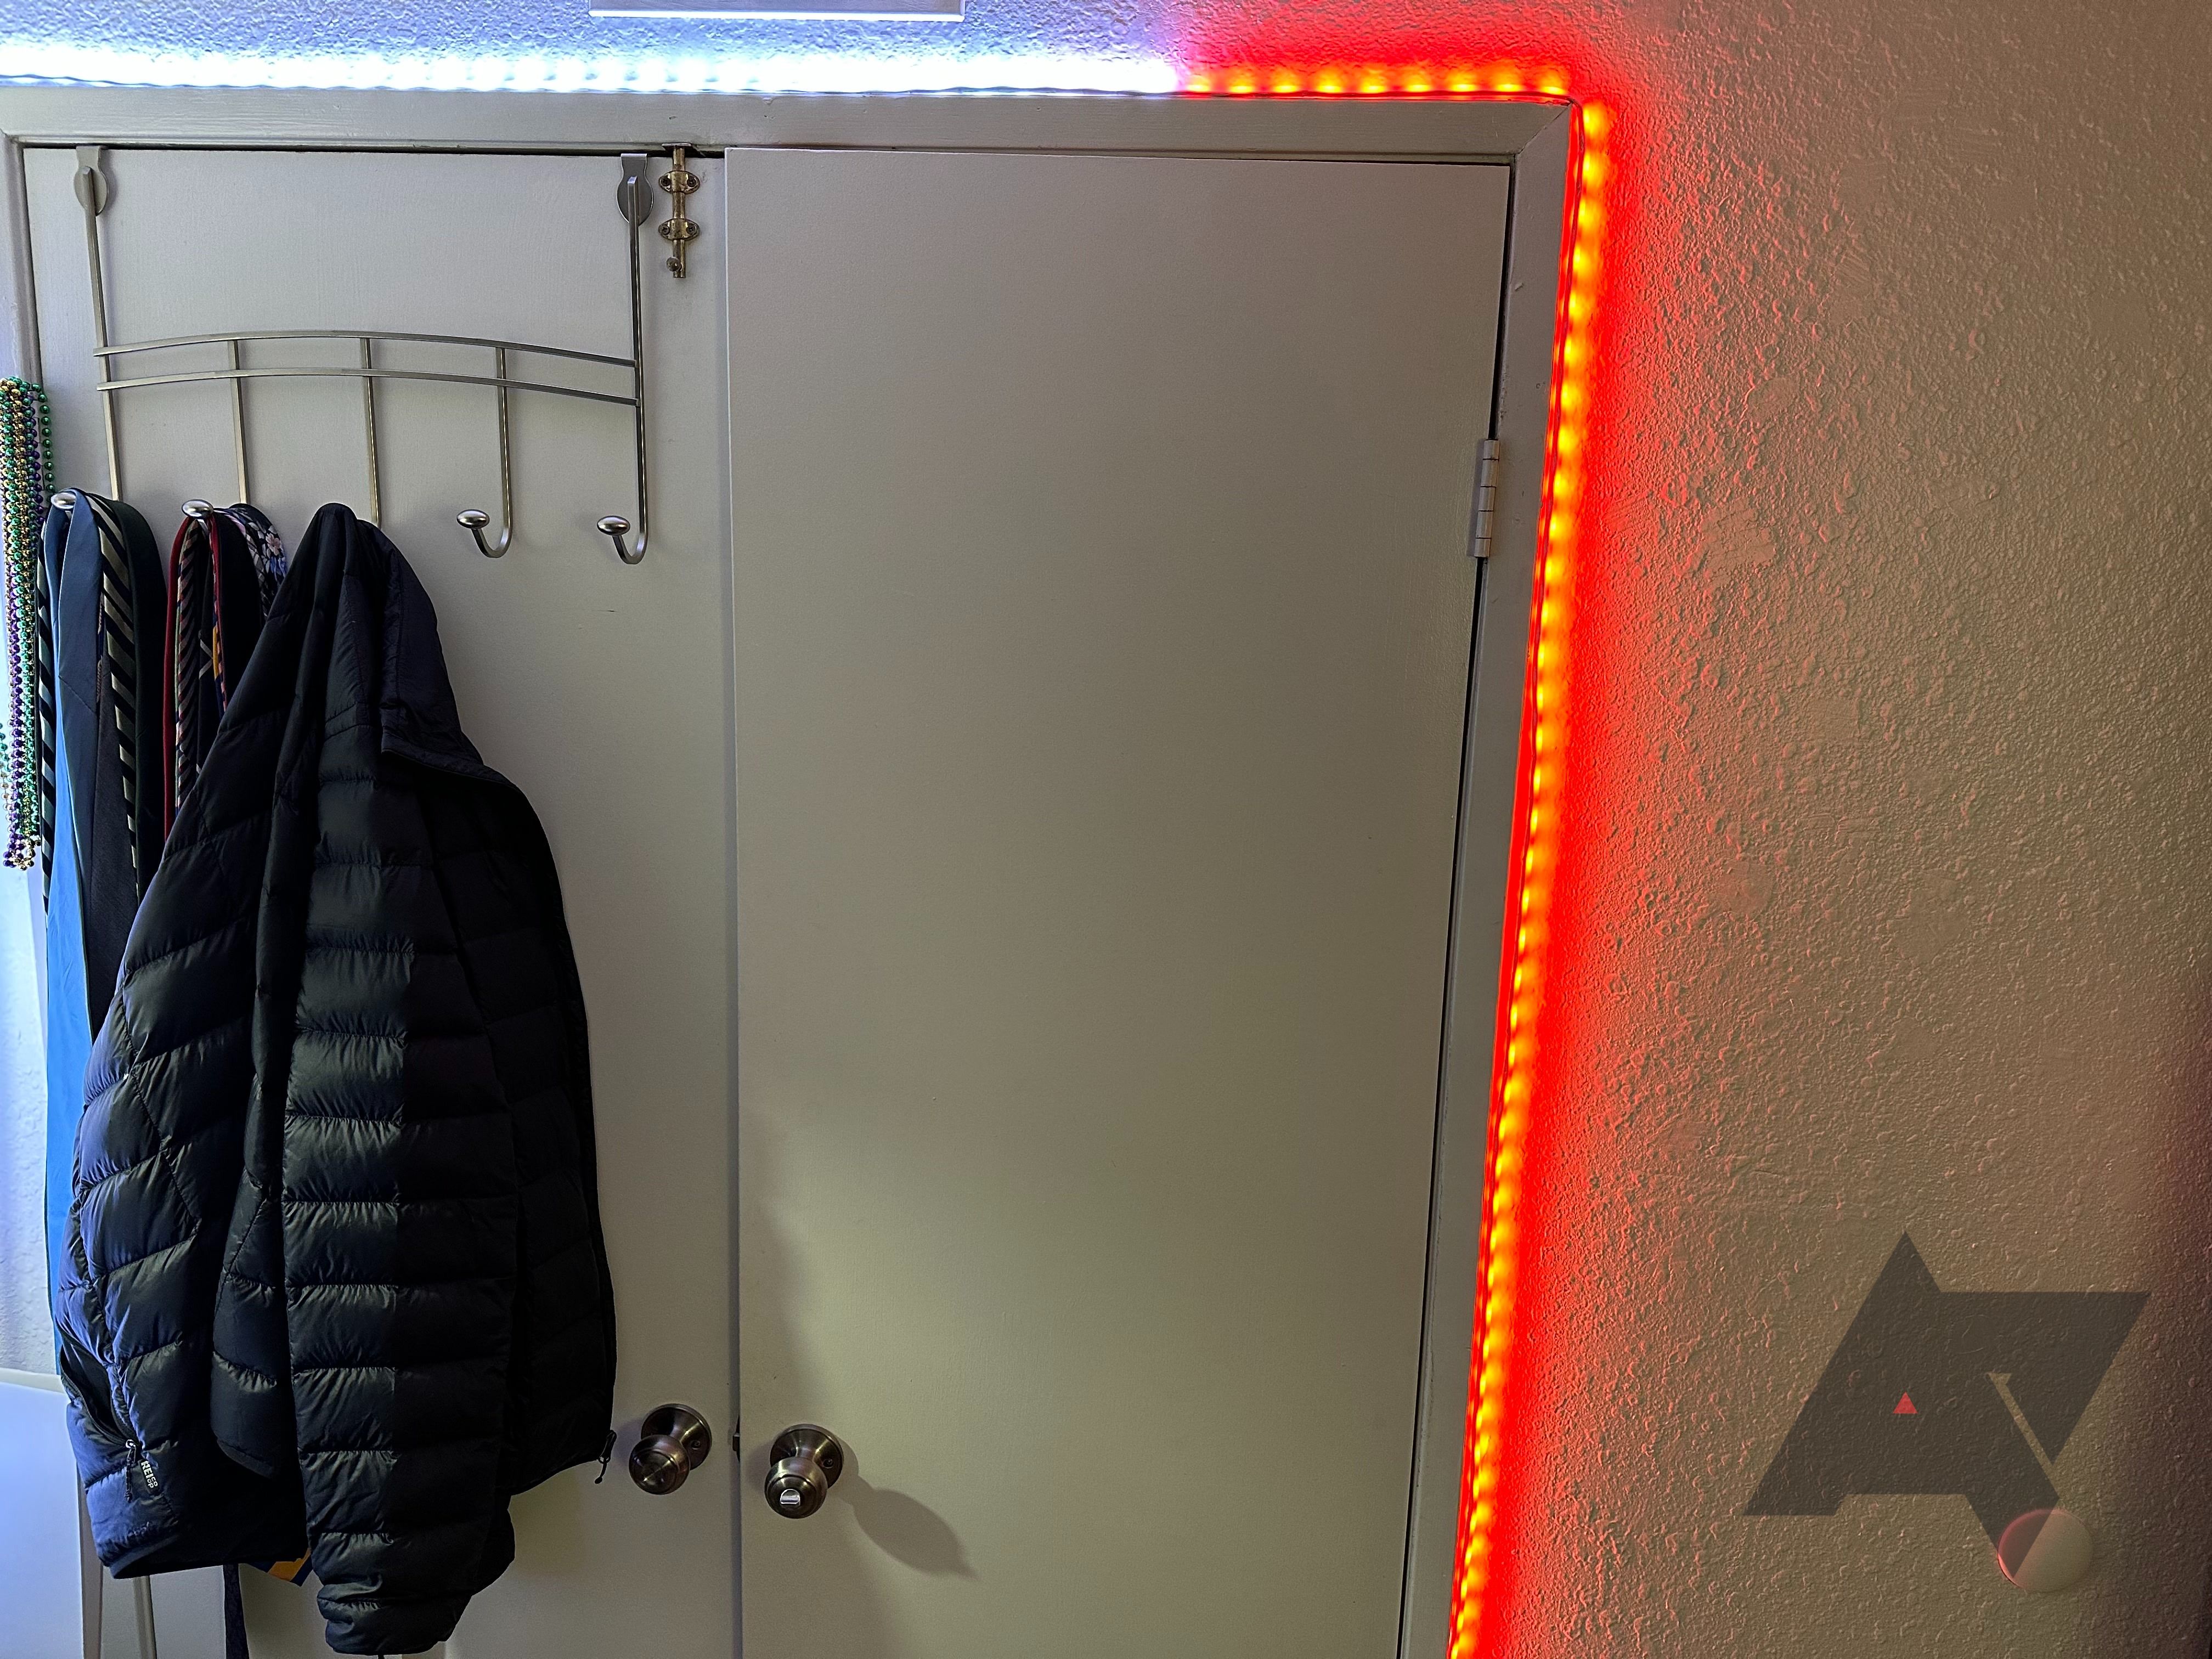 Faixa de luz inteligente Cync Full Color Dynamic Effects da GE enrolada em uma moldura de porta, com aparência vermelha e branca